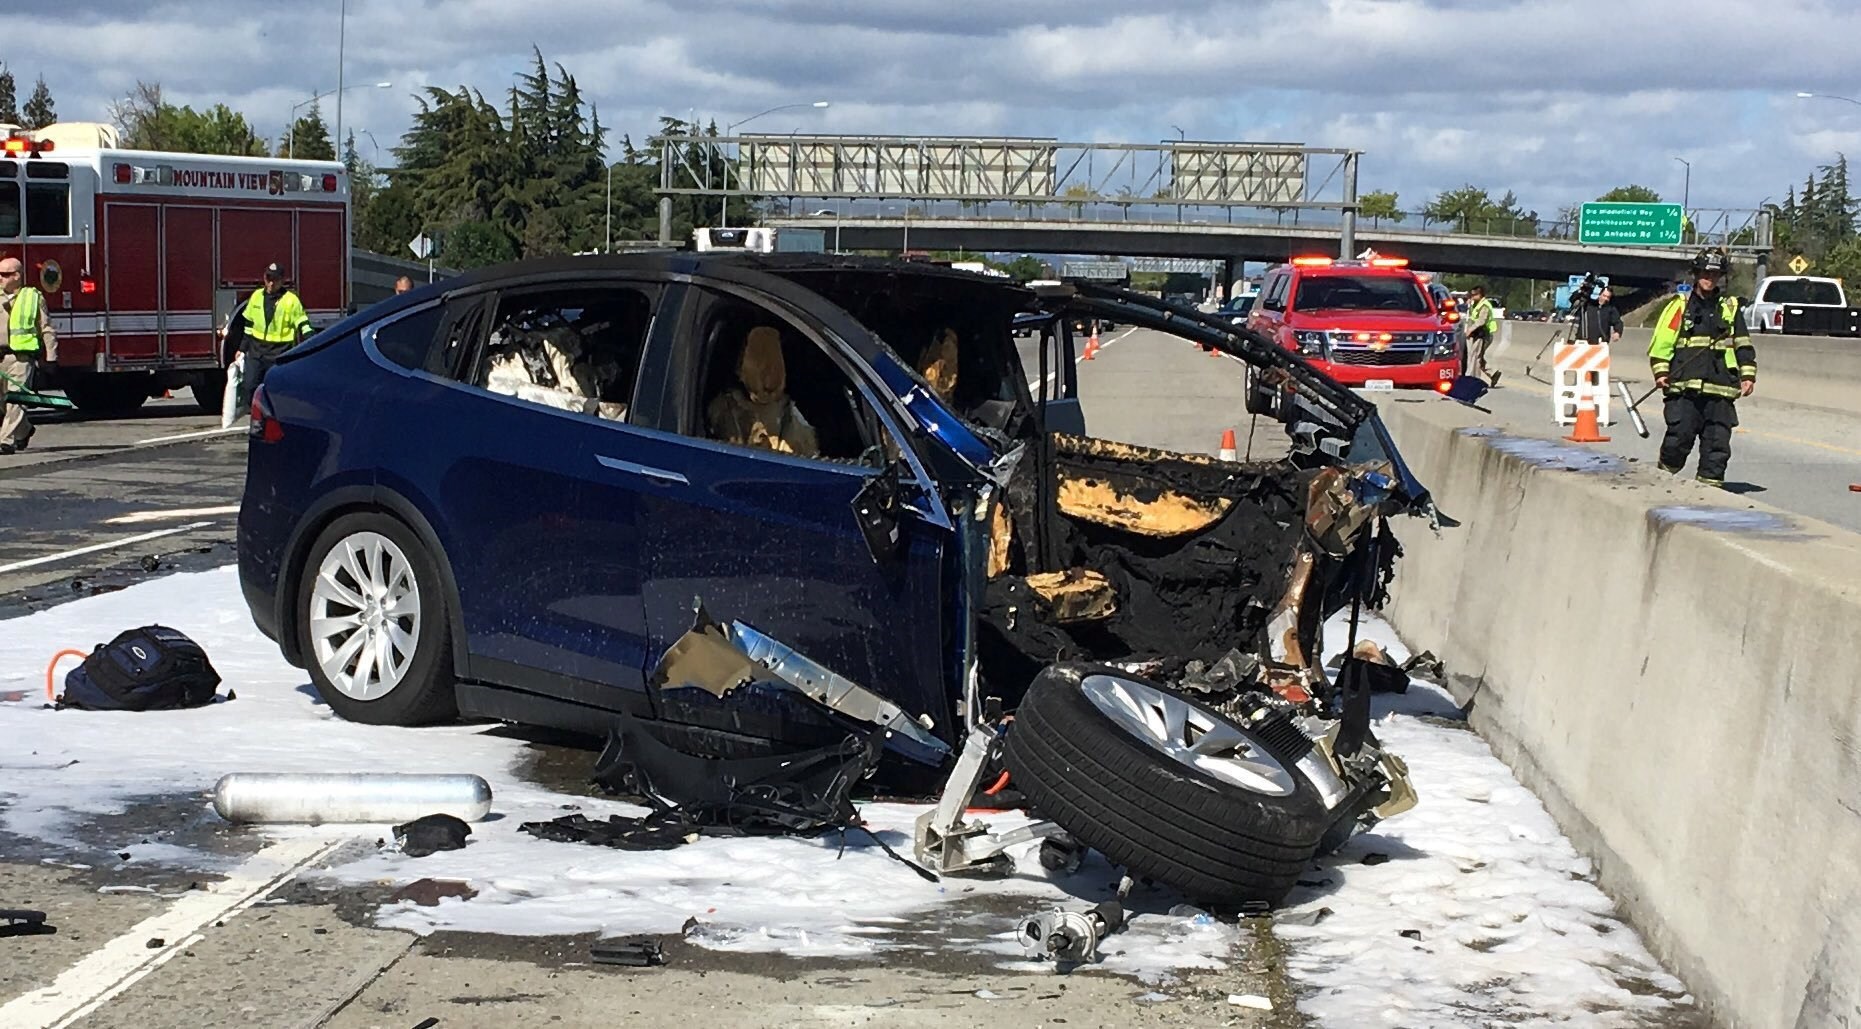 Tesla otopilotun acı bilançosu ortaya çıktı: 17 ölüm, 736 kaza